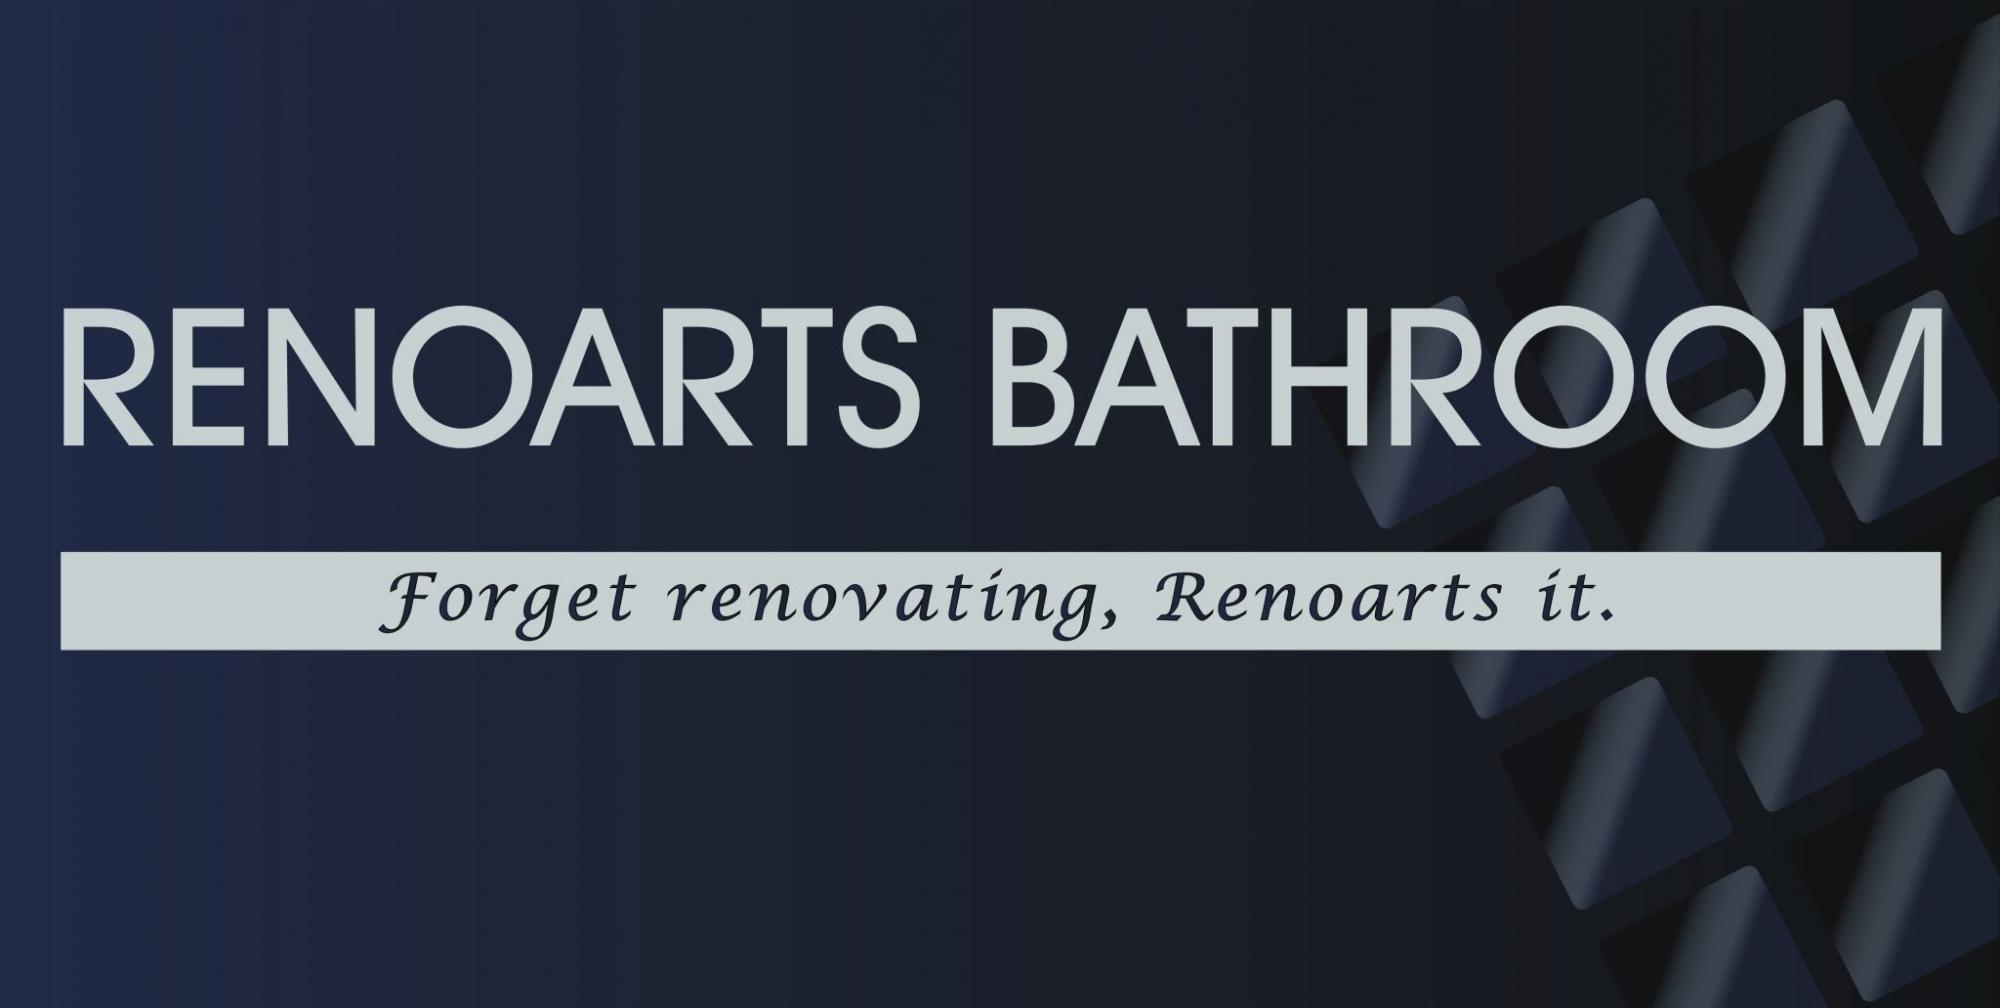 Renoarts Bathroom logo